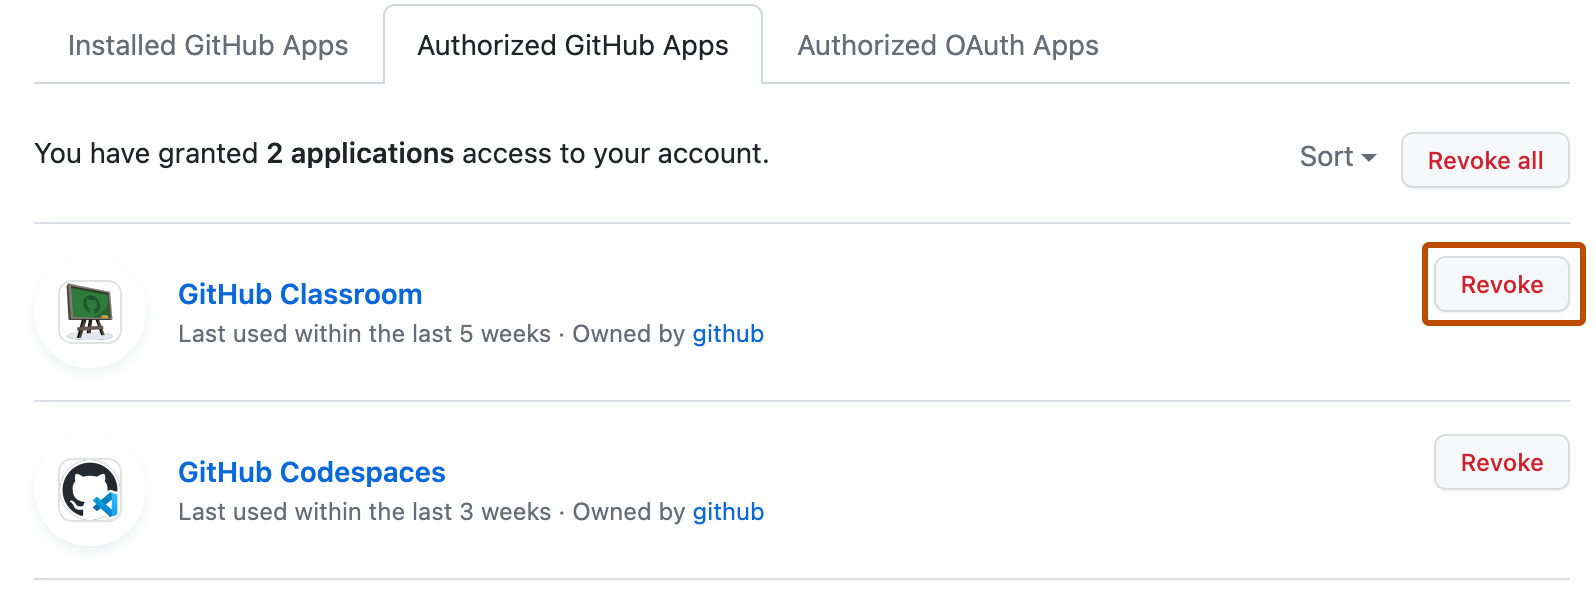 Liste der autorisierten GitHub App